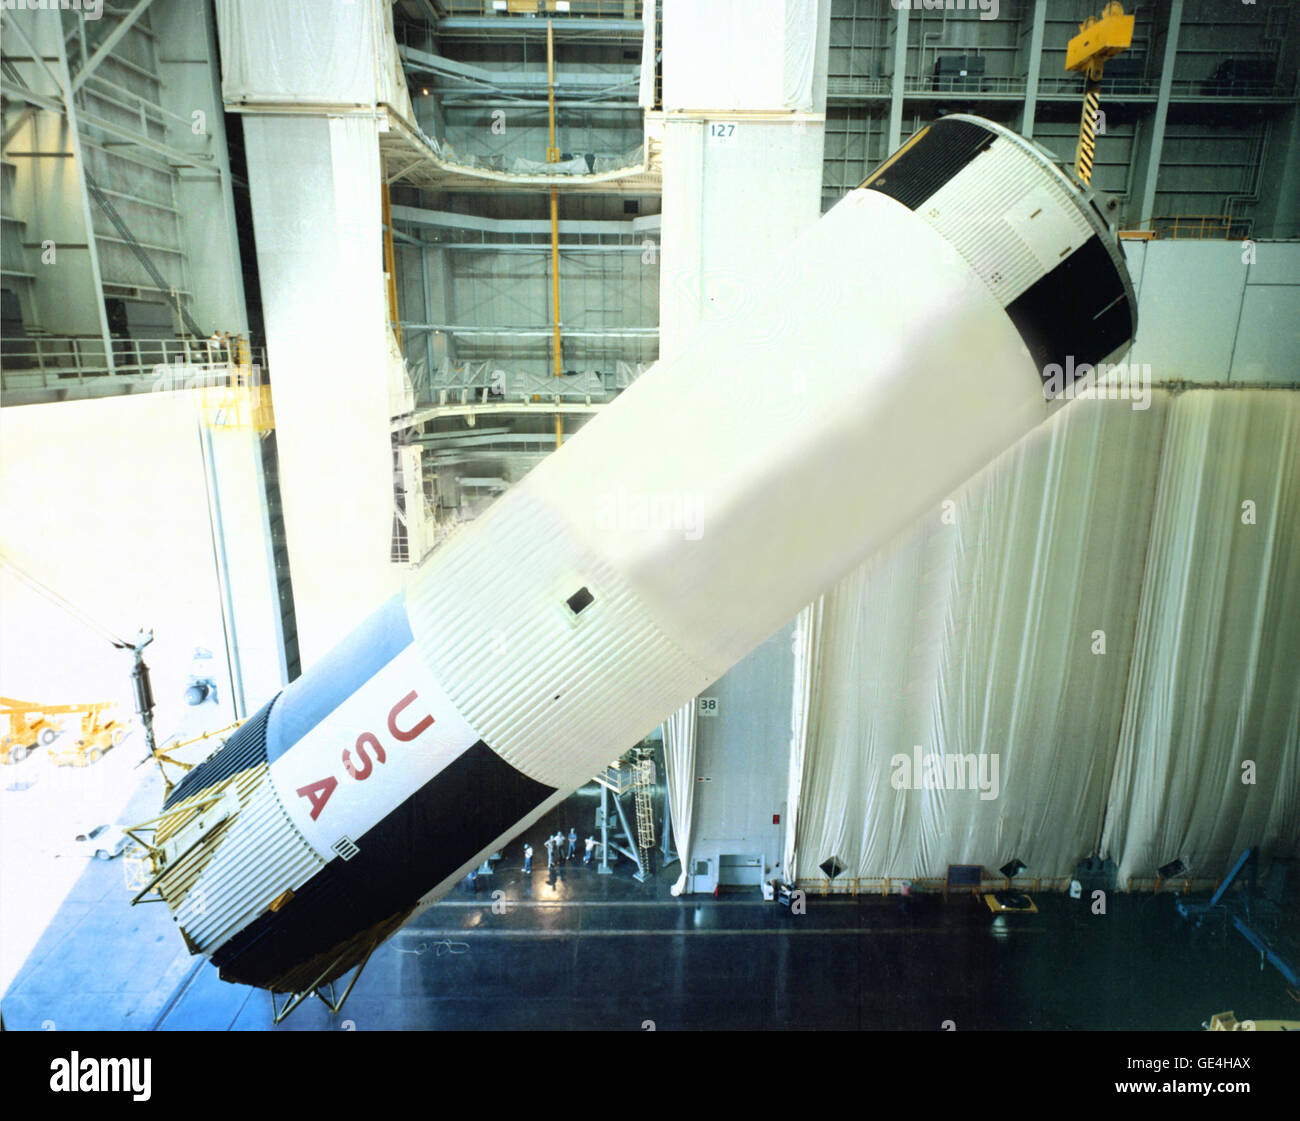 (1967) zeigt dieses Bild S-1C-8 (erste Phase) der Saturn V in eine horizontale Position am Michoud Assembly Facility (MAF) gesenkt. MAF hergestellt die Stufen der Saturn IB und V, einschließlich der S-1 C Bühne.  Bild-Nr.: 6759506 Stockfoto